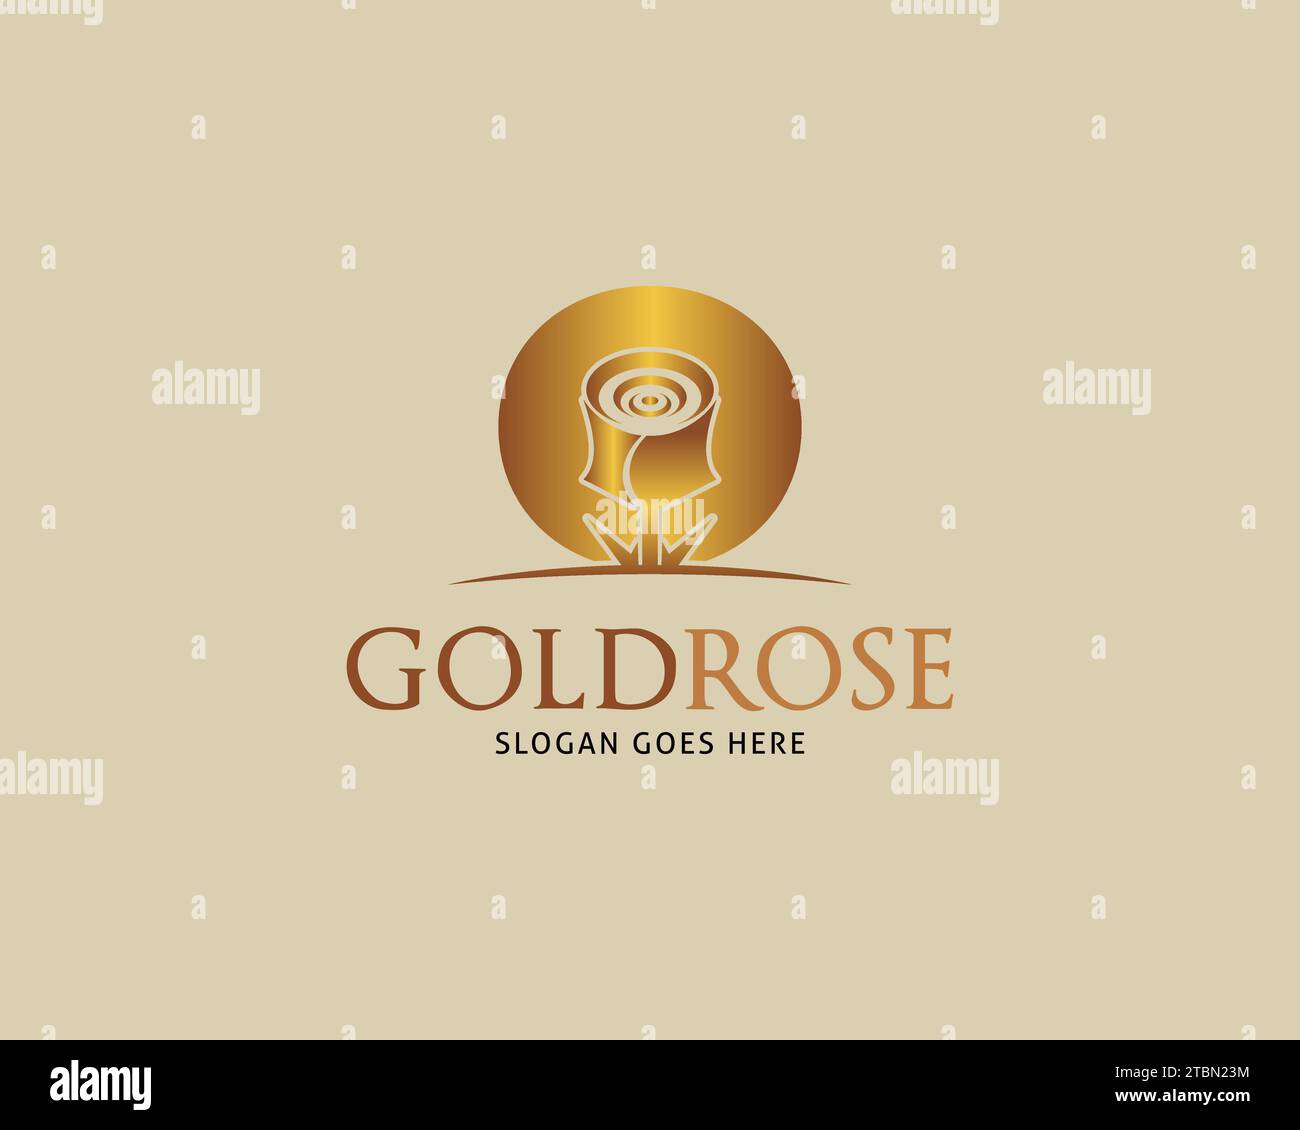 Golden Rose Vector Logo Design Template Stock Vector